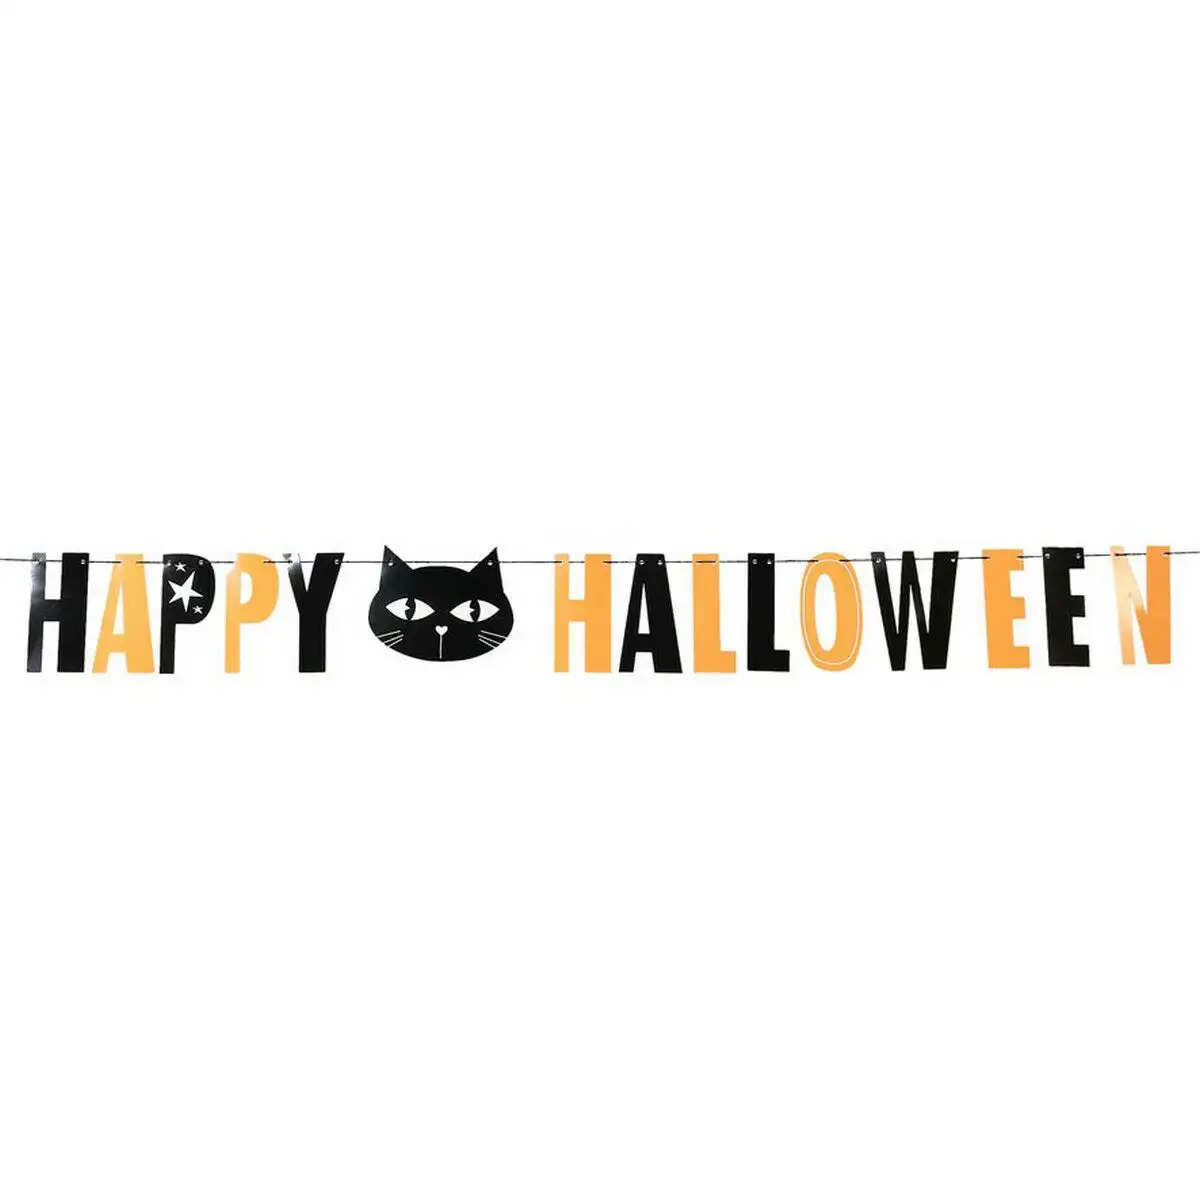 Decoration d halloween happy halloween cat_8776. DIAYTAR SENEGAL - Votre Passage vers le Raffinement. Plongez dans notre univers de produits exquis et choisissez des articles qui ajoutent une touche de sophistication à votre vie.